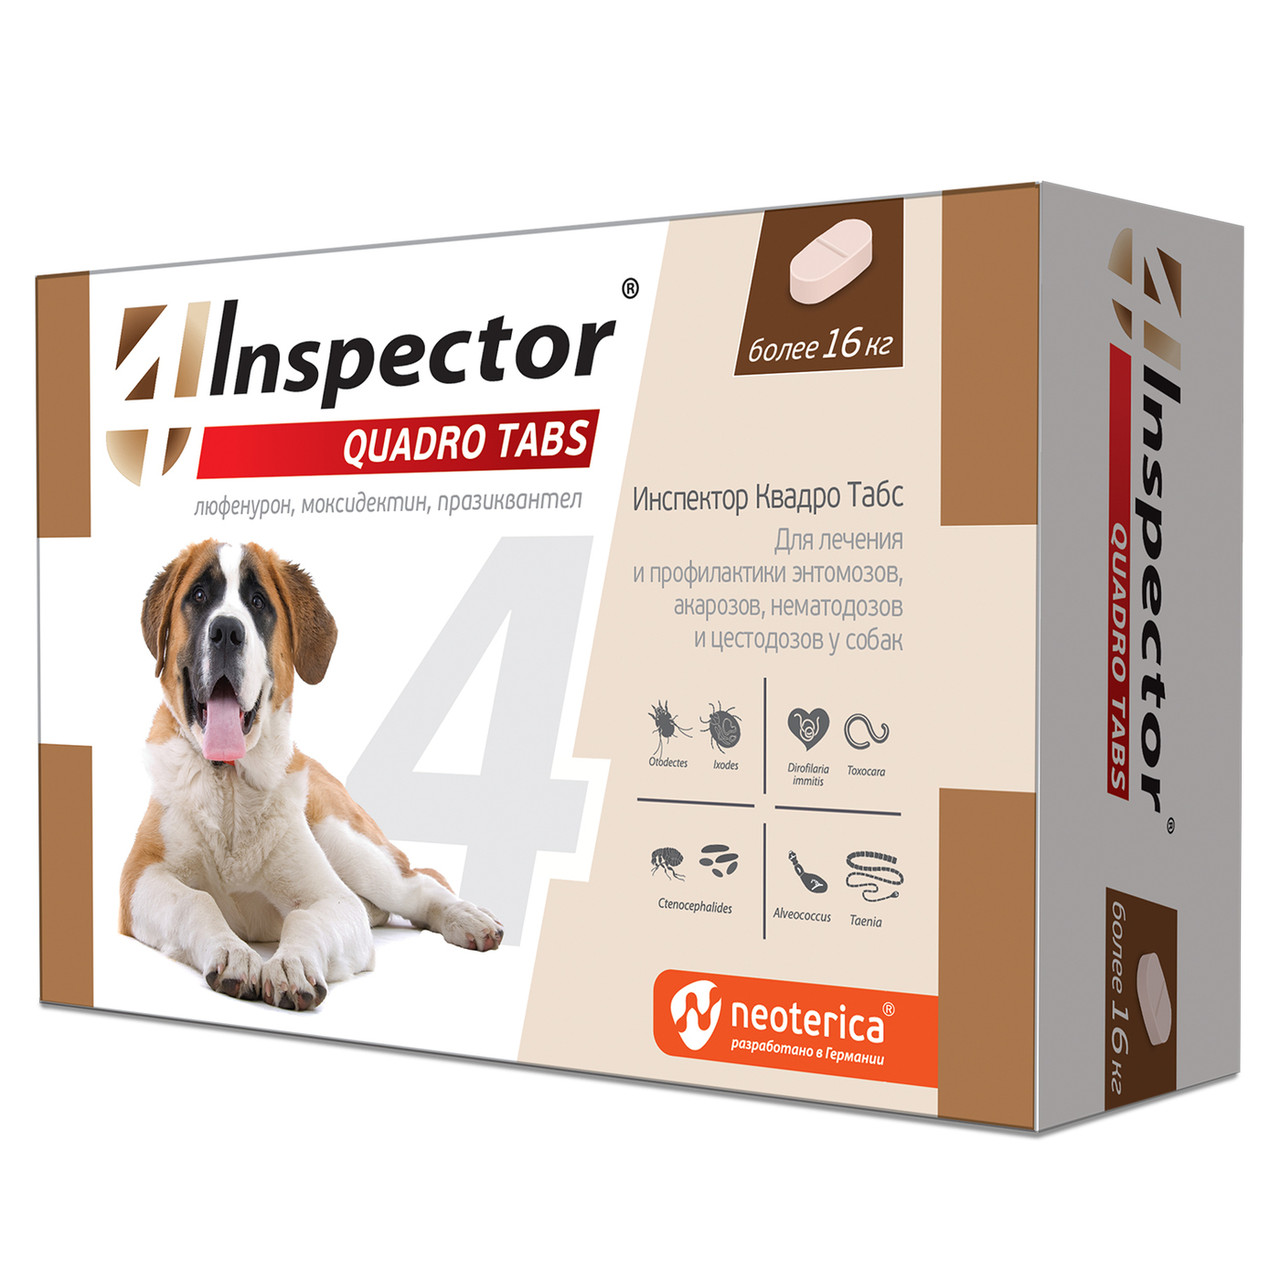 Inspector Quadro Tabs таблетки от паразитов для собак более 16 кг